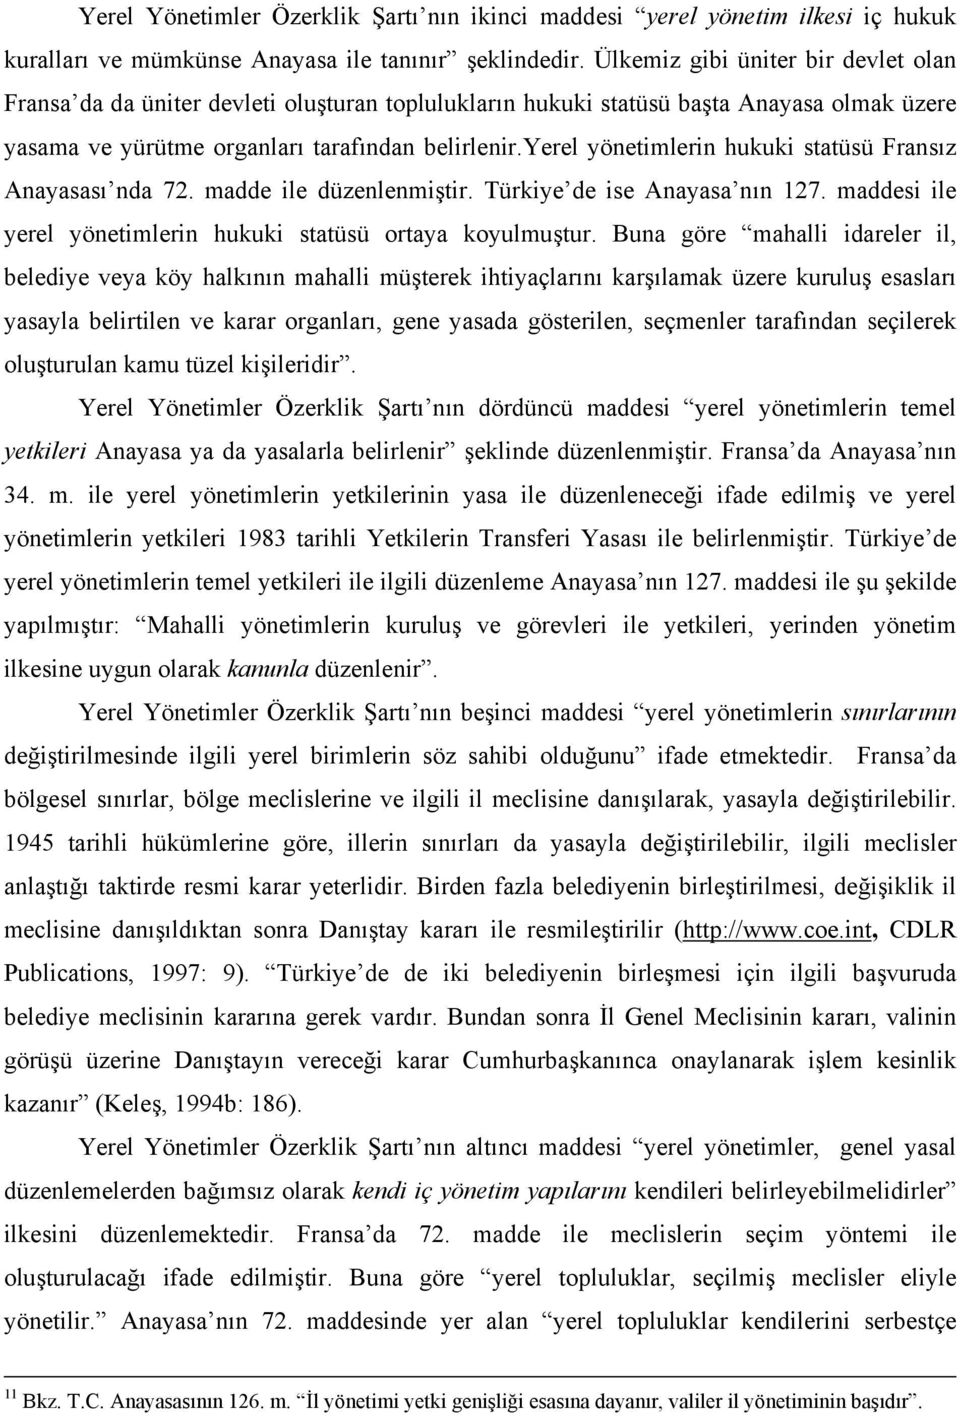 yerel yönetimlerin hukuki statüsü Fransız Anayasası nda 72. madde ile düzenlenmiştir. Türkiye de ise Anayasa nın 127. maddesi ile yerel yönetimlerin hukuki statüsü ortaya koyulmuştur.